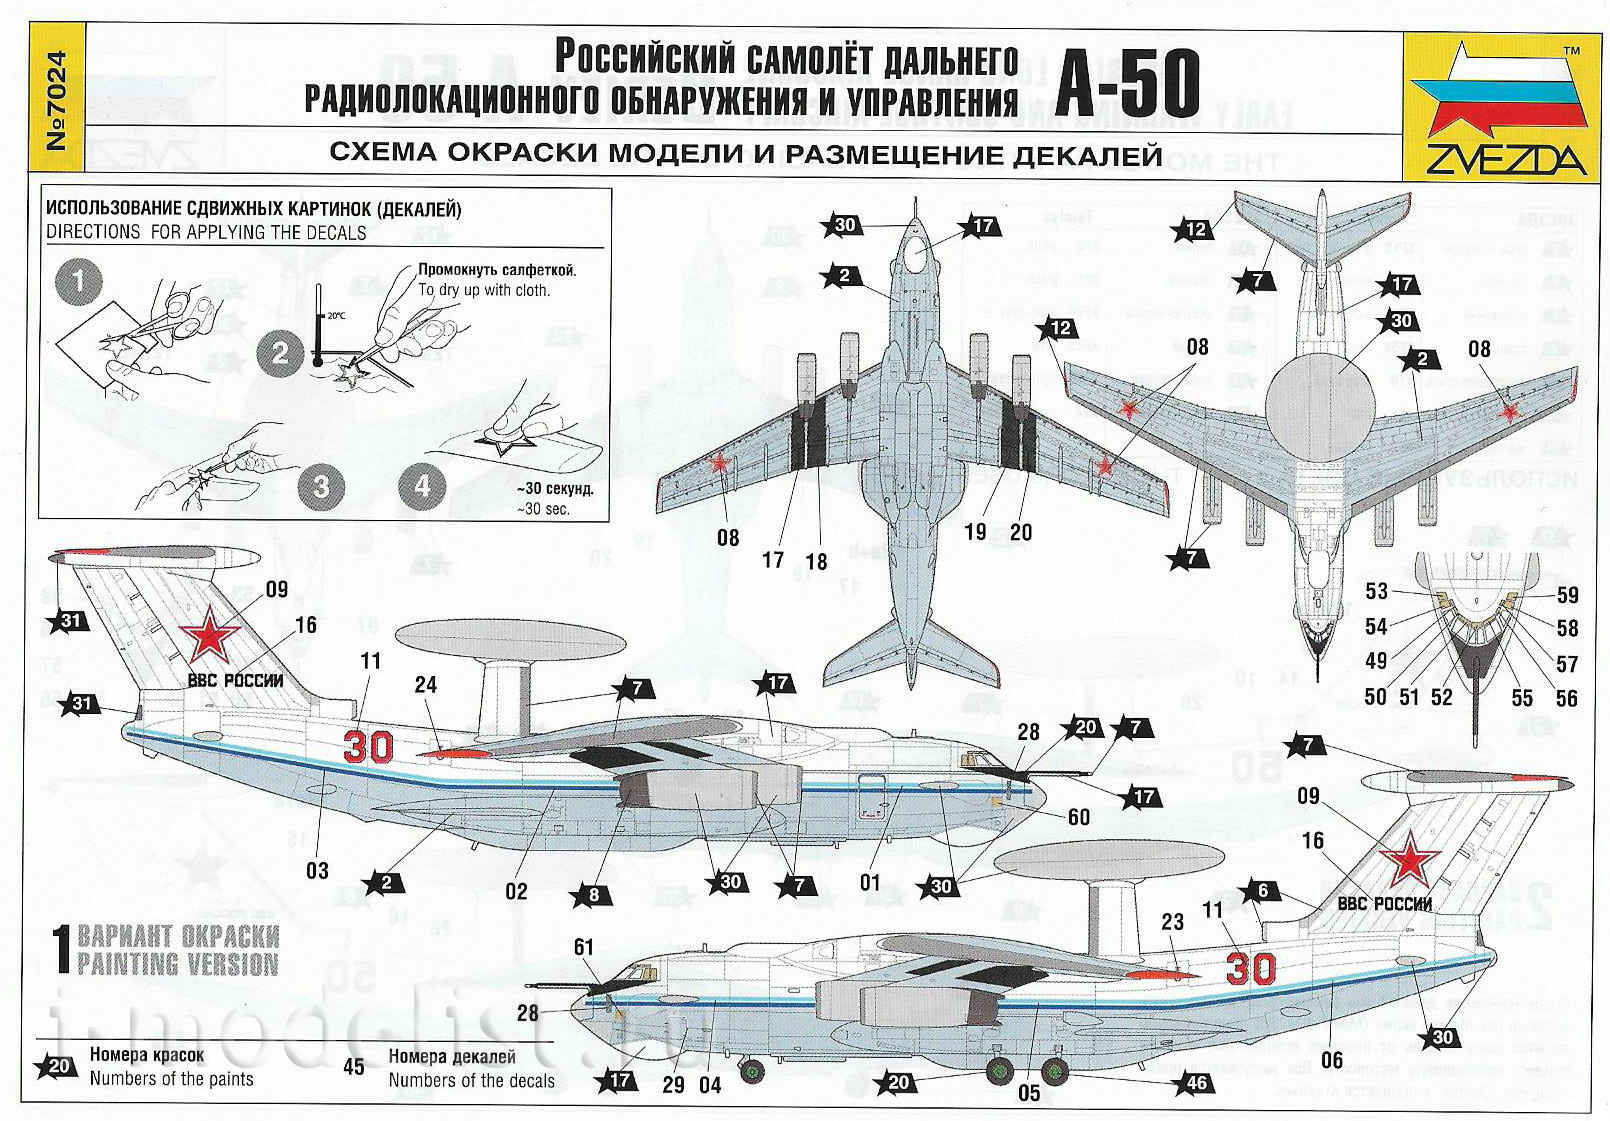 7024 Звезда 1/144 Российский самолет дальнего радиолокационного обнаружения А-50